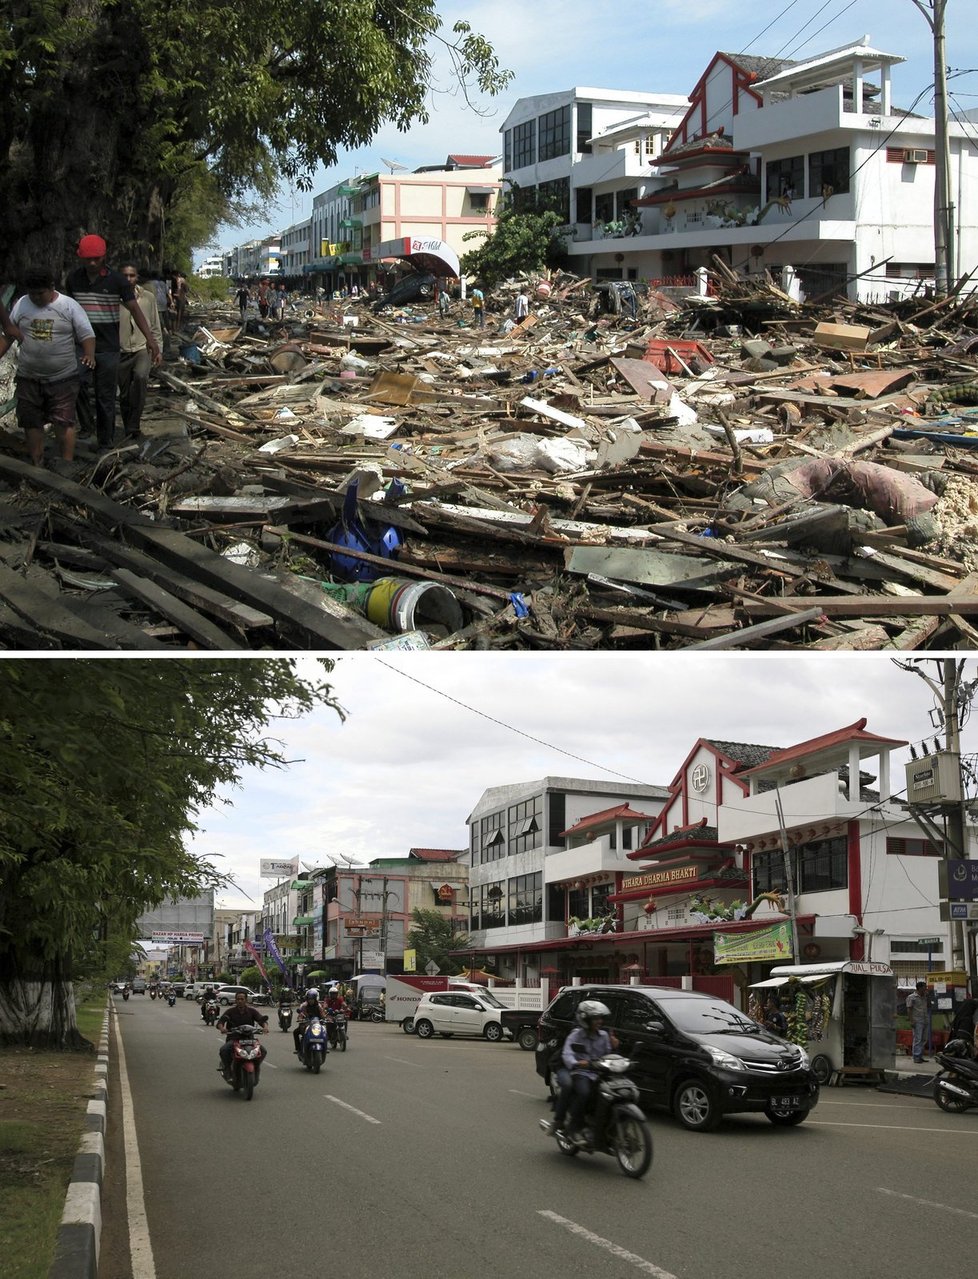 Deset let od přírodní katastrofy. Jak vypadají místa, která zasáhla tsunami v roce 2004, nyní?